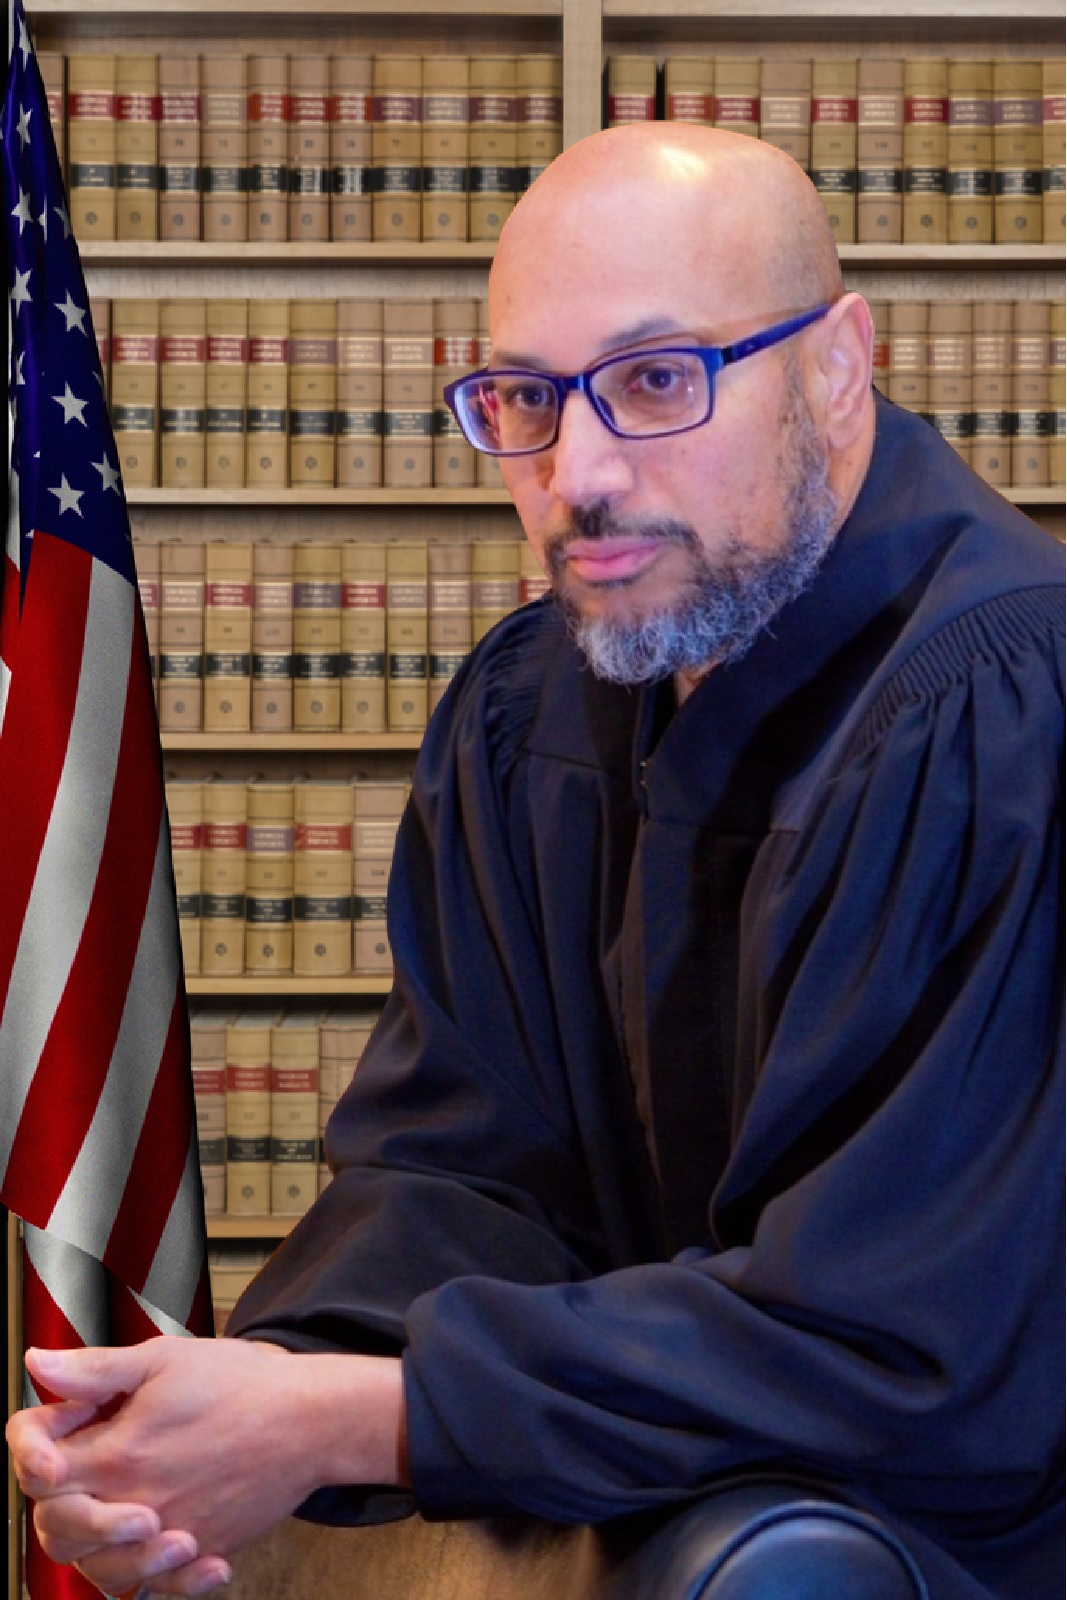 Judge Eric Dunaway